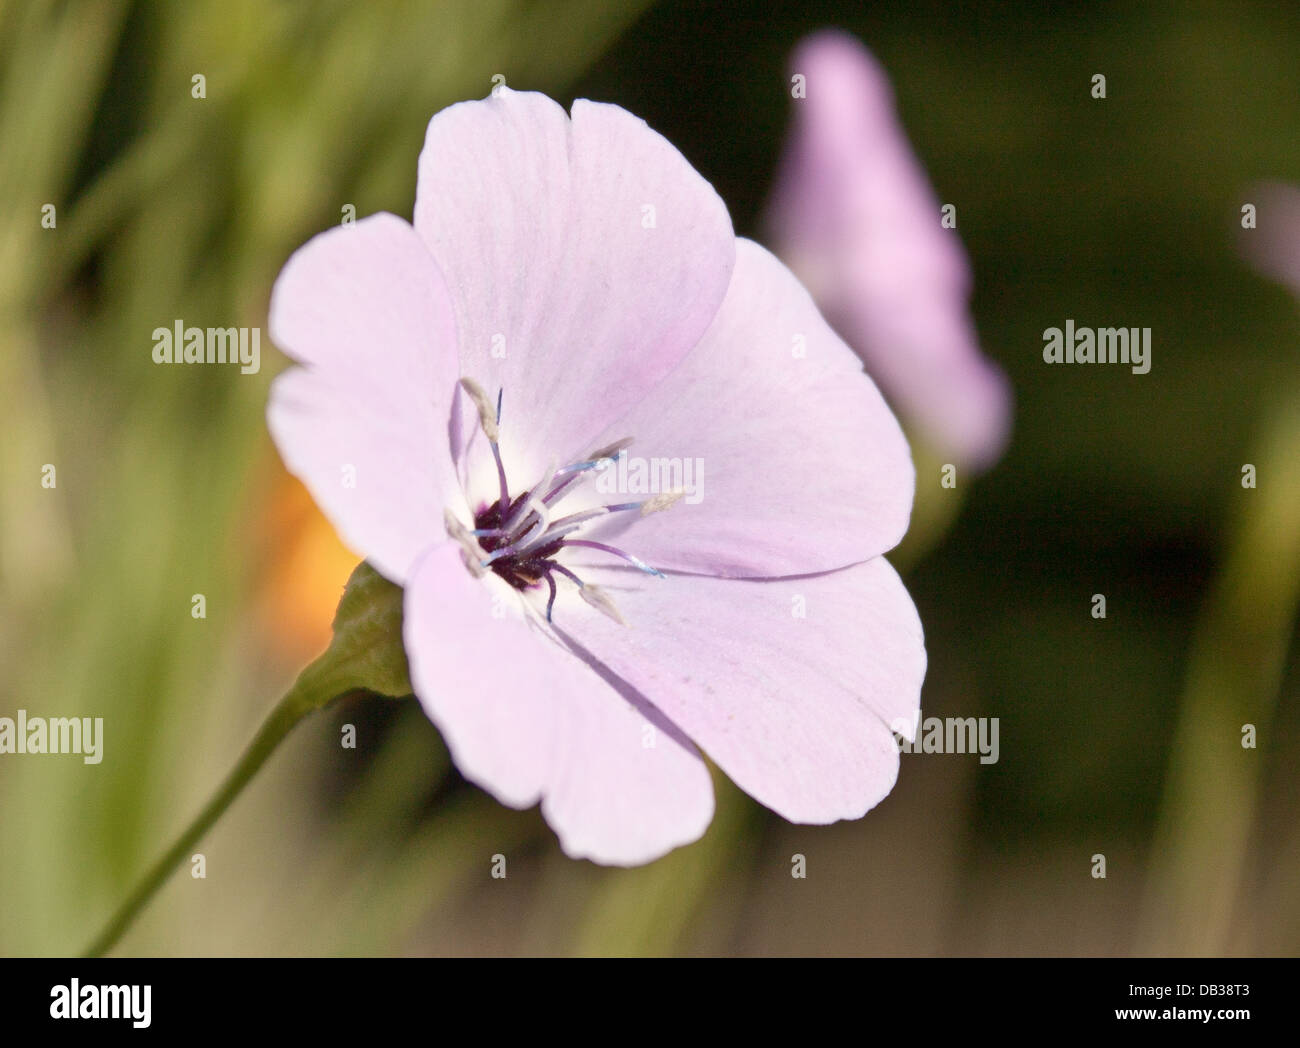 British Wild Flowers Stock Photo